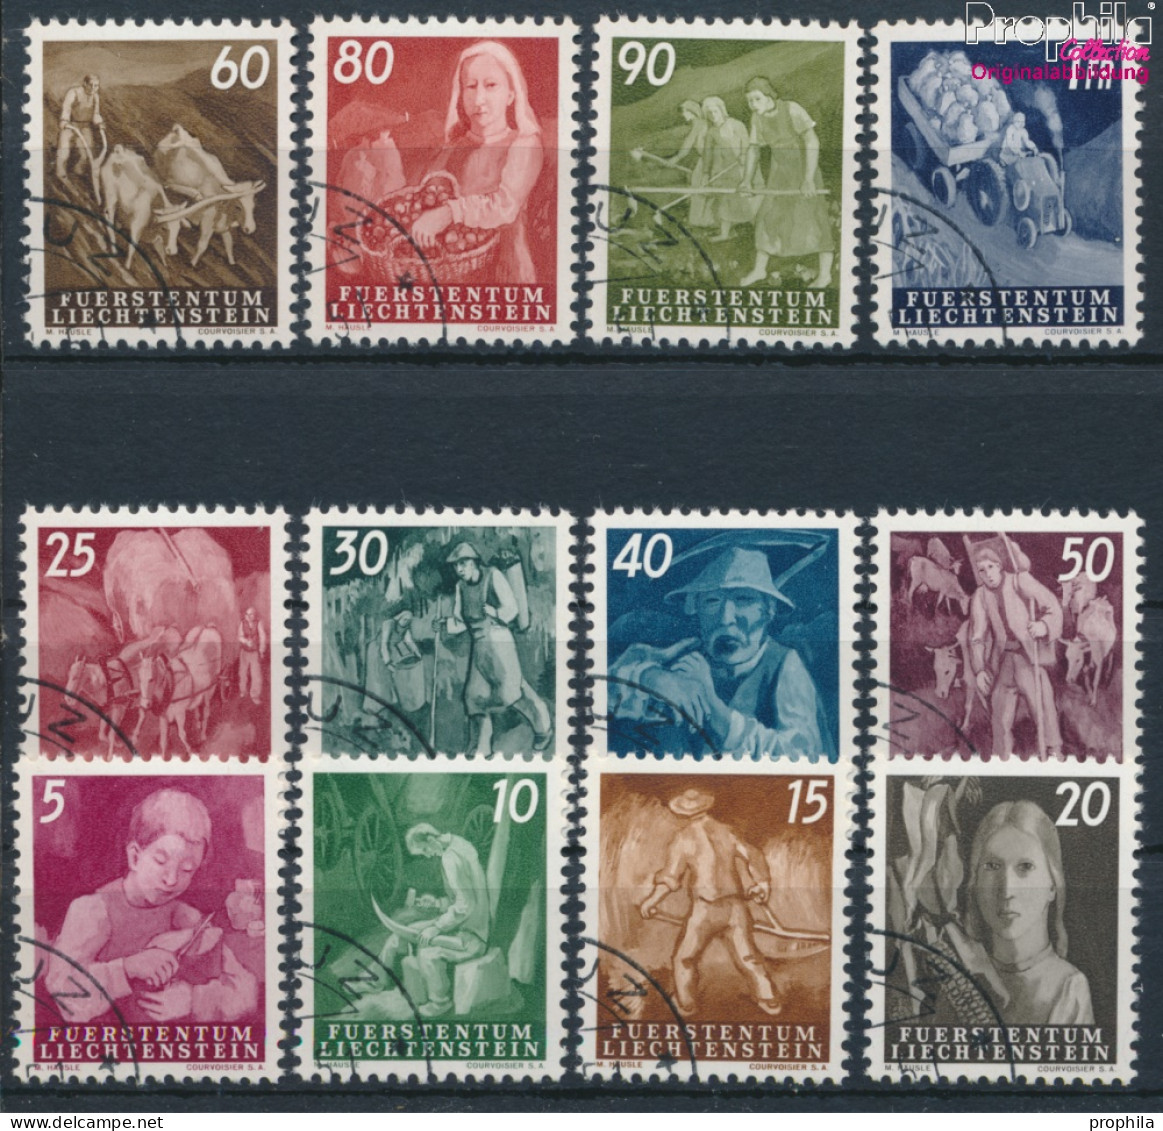 Liechtenstein 289-300 (kompl.Ausg.) Gestempelt 1951 Freimarken (10331907 - Used Stamps